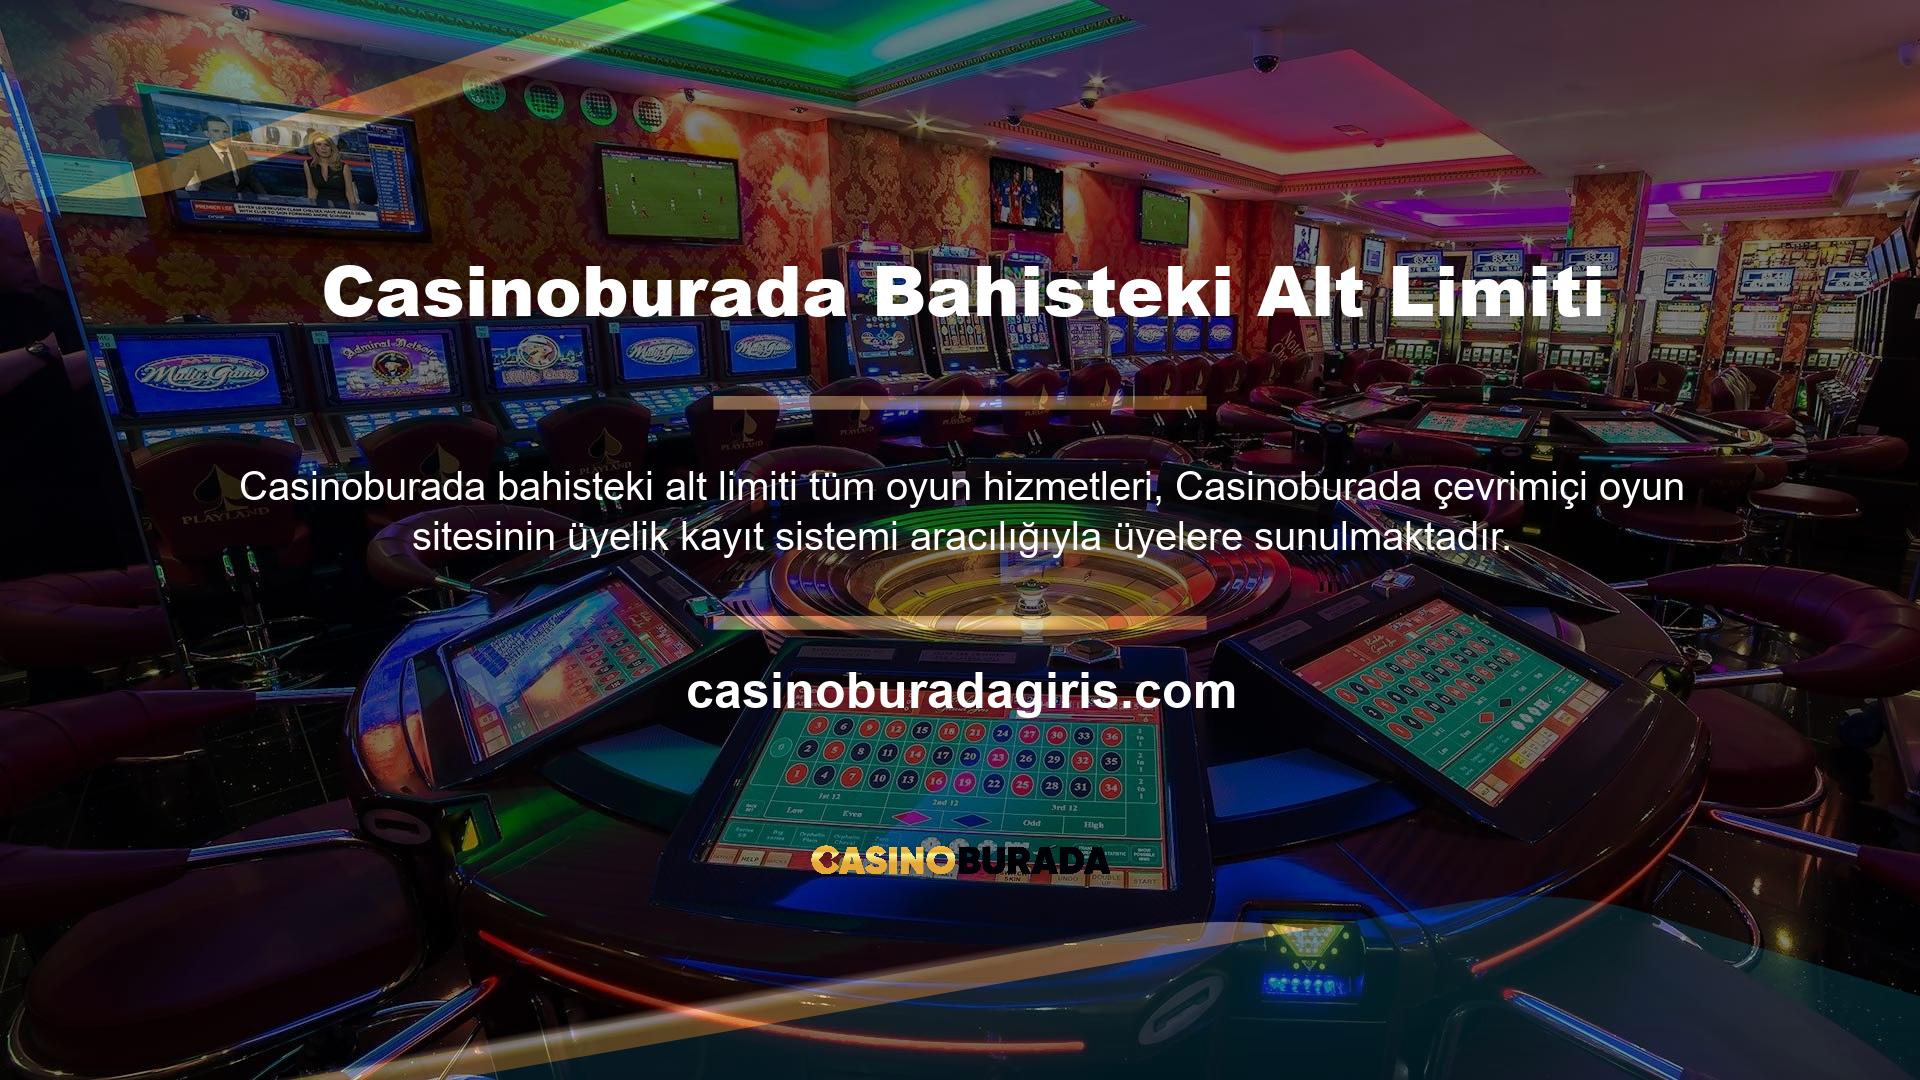 Casinoburada, kullanıcıların giriş yapmasını ve üyelik süreci hakkında daha fazla bilgi almasını kolaylaştırır